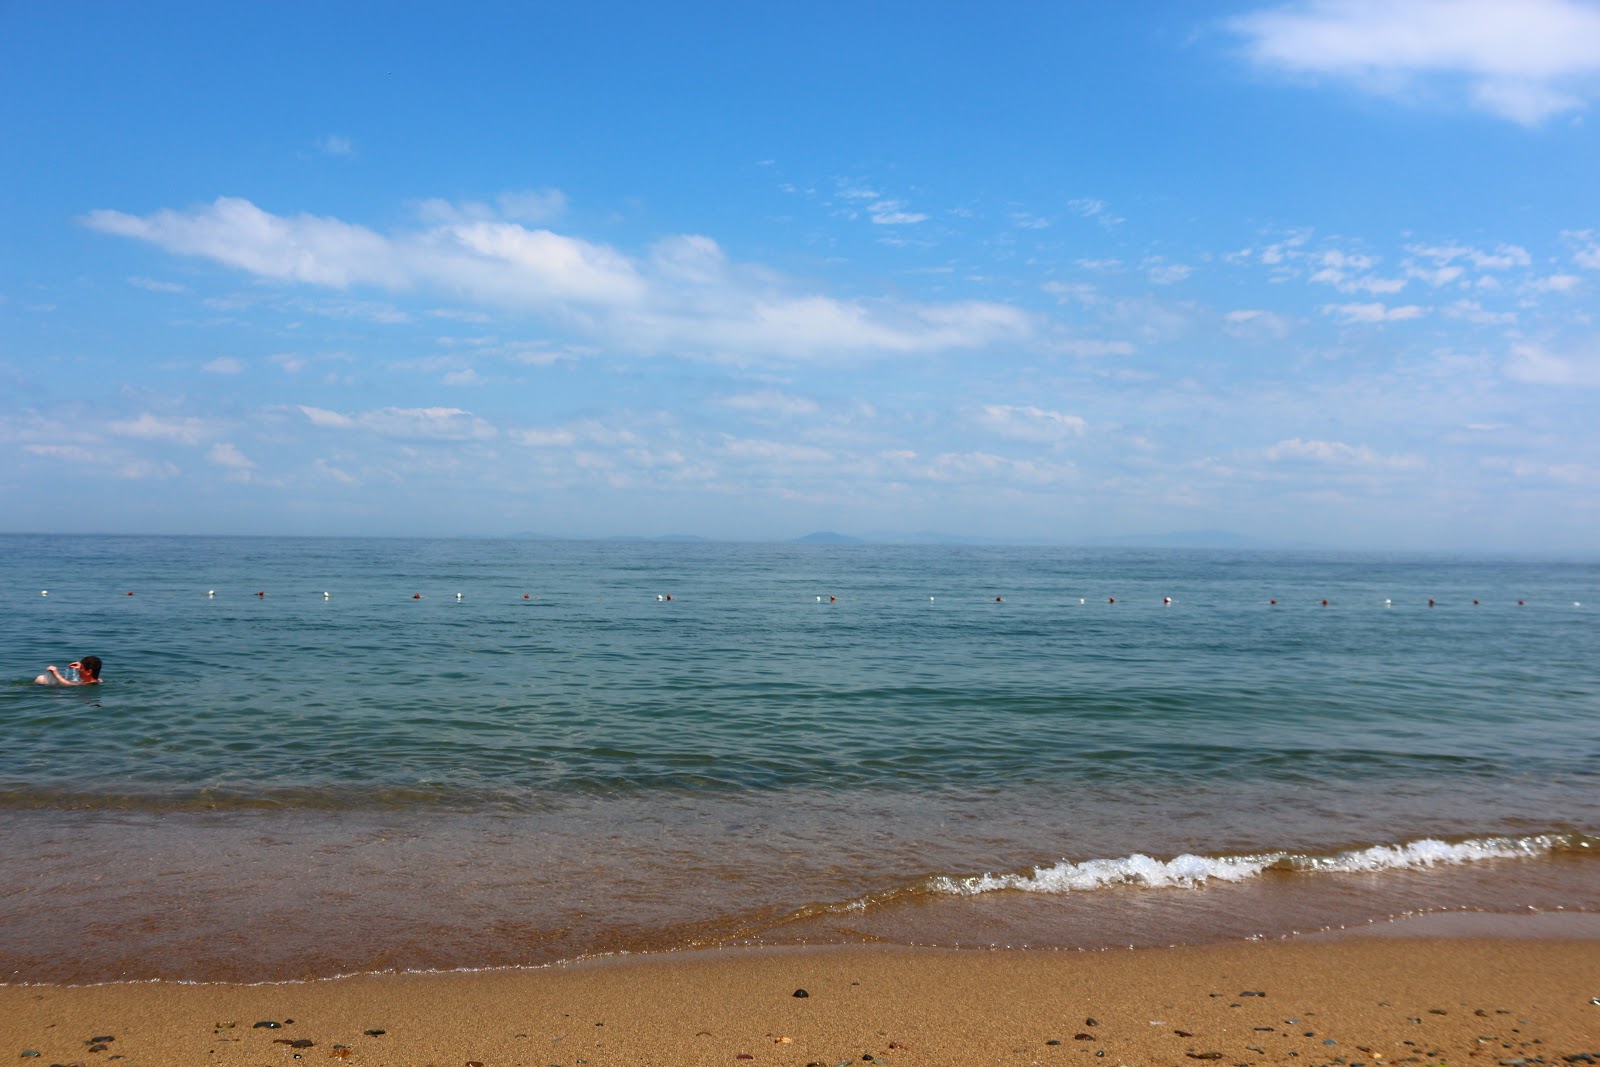 Mawish Plajı'in fotoğrafı kahverengi kum yüzey ile